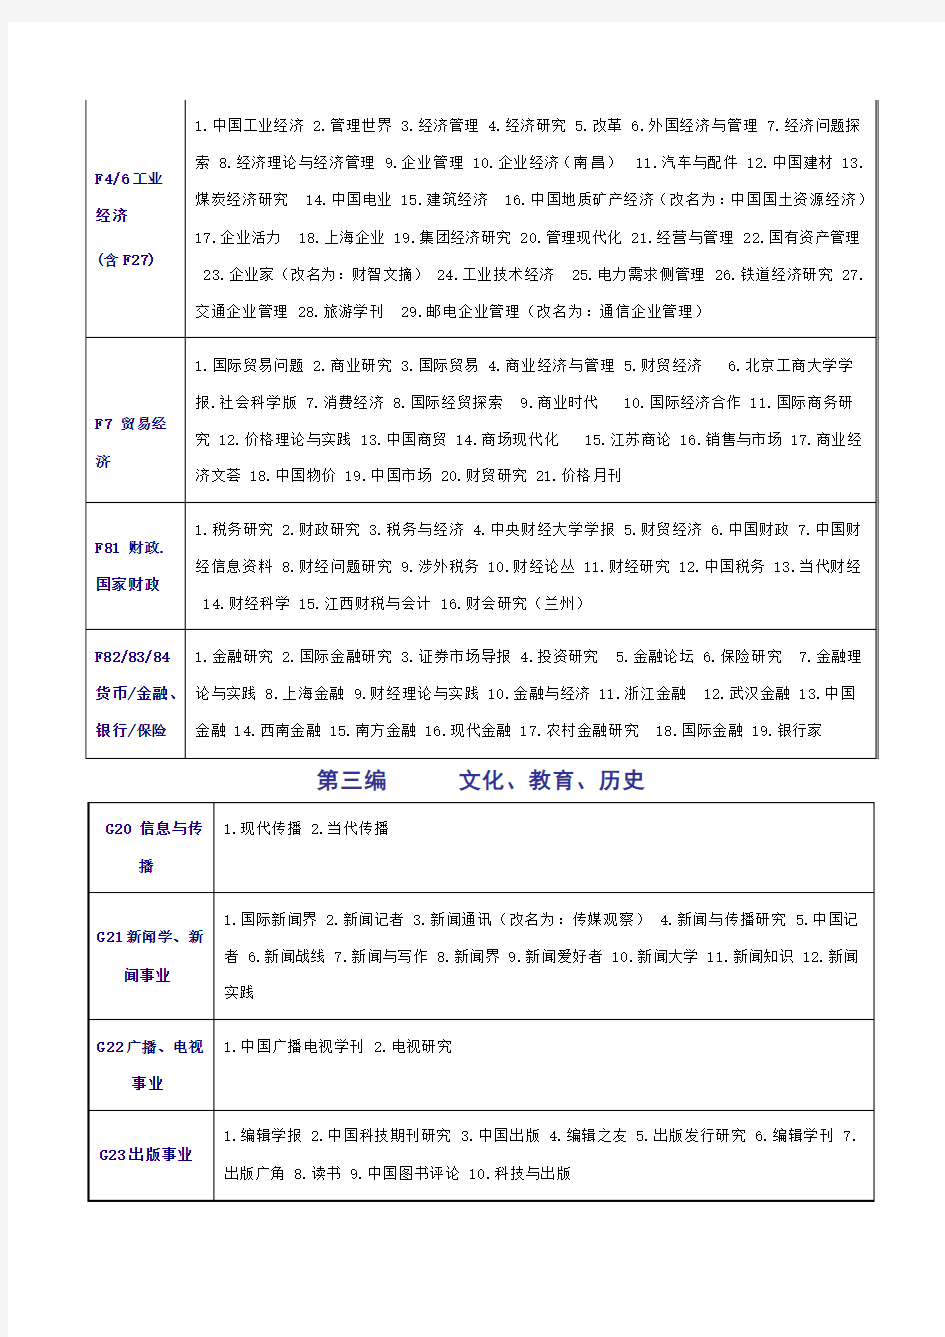 《中文核心期刊要目总览》2008年印刷版(即第五版)